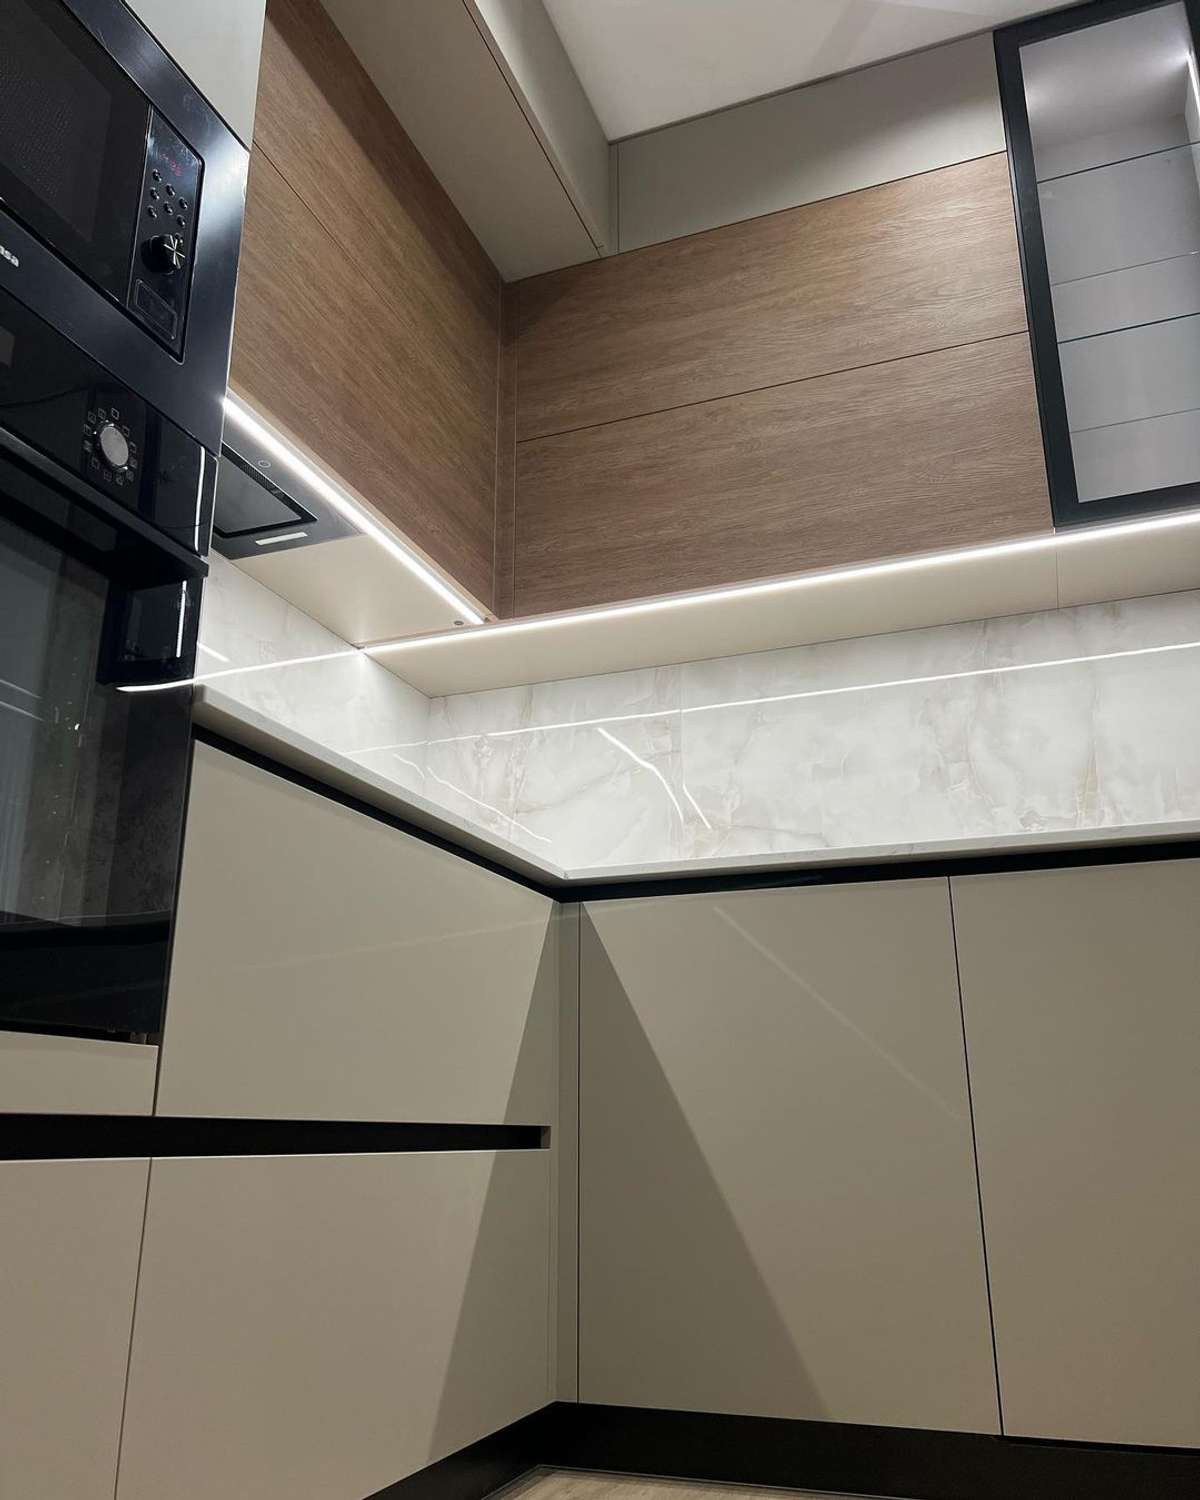 Kitchen, Lighting, Storage Designs by Interior Designer Abdul Malik, Indore | Kolo